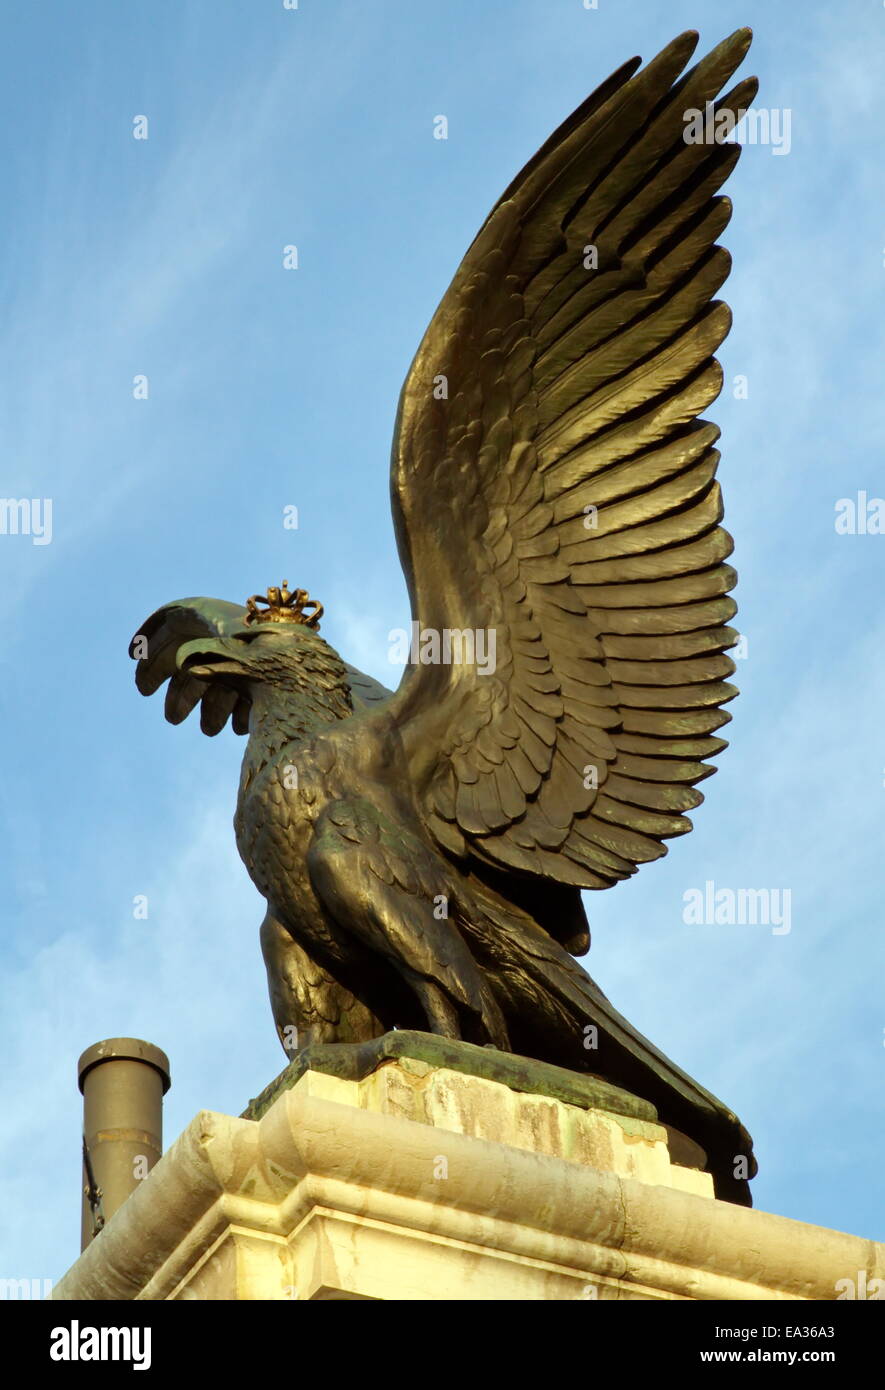 Eagle, Park des Bastions, Geneva, Switzerland Stock Photo